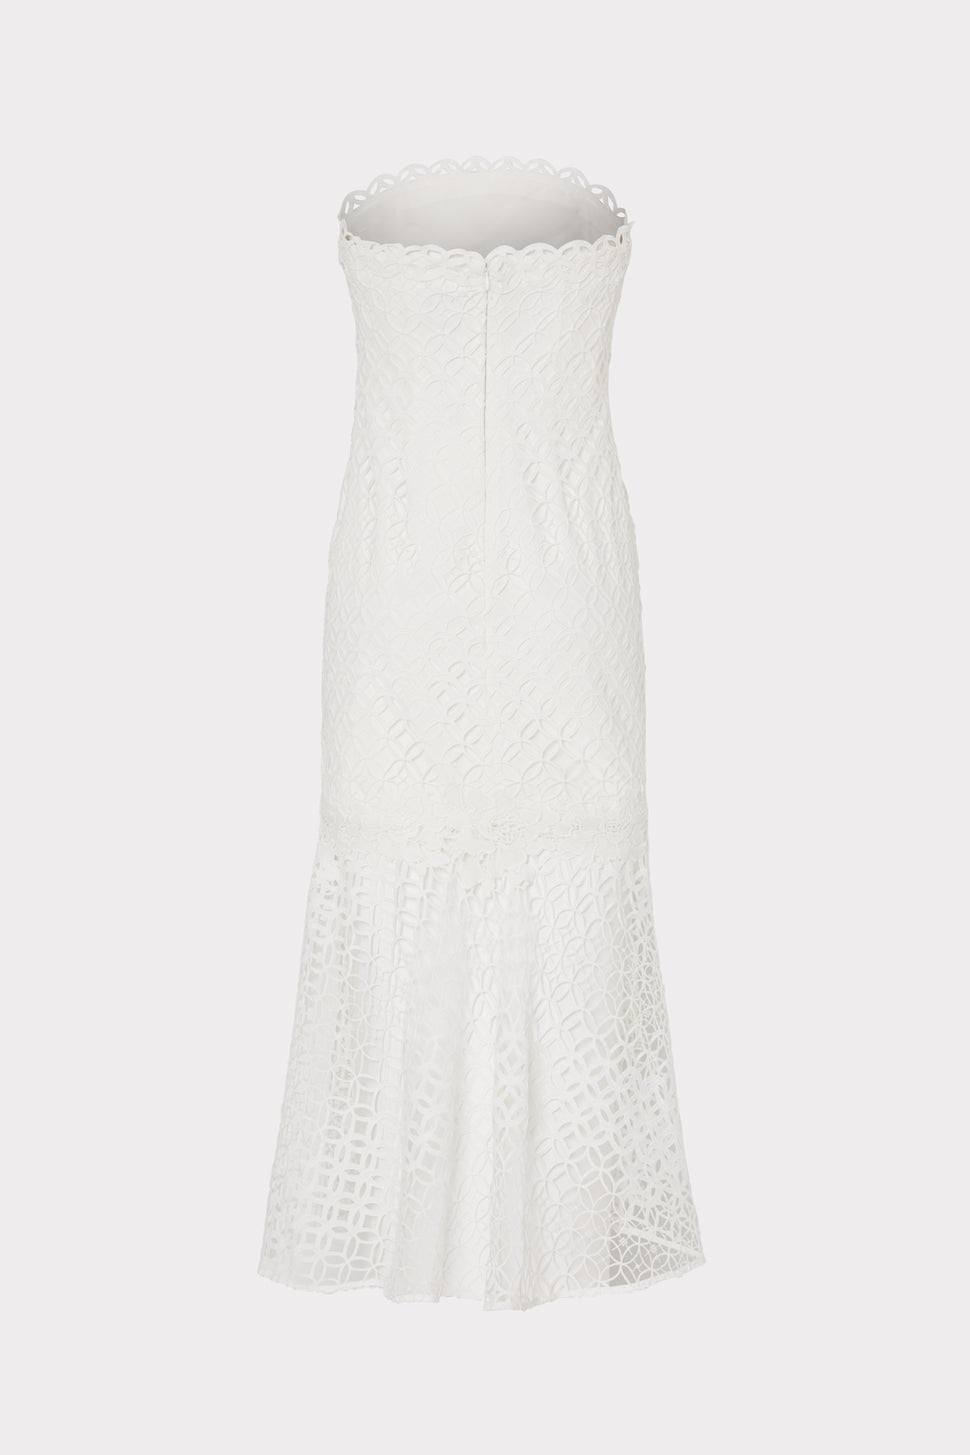 Nuriel Interlocking Geo Lace Dress in White